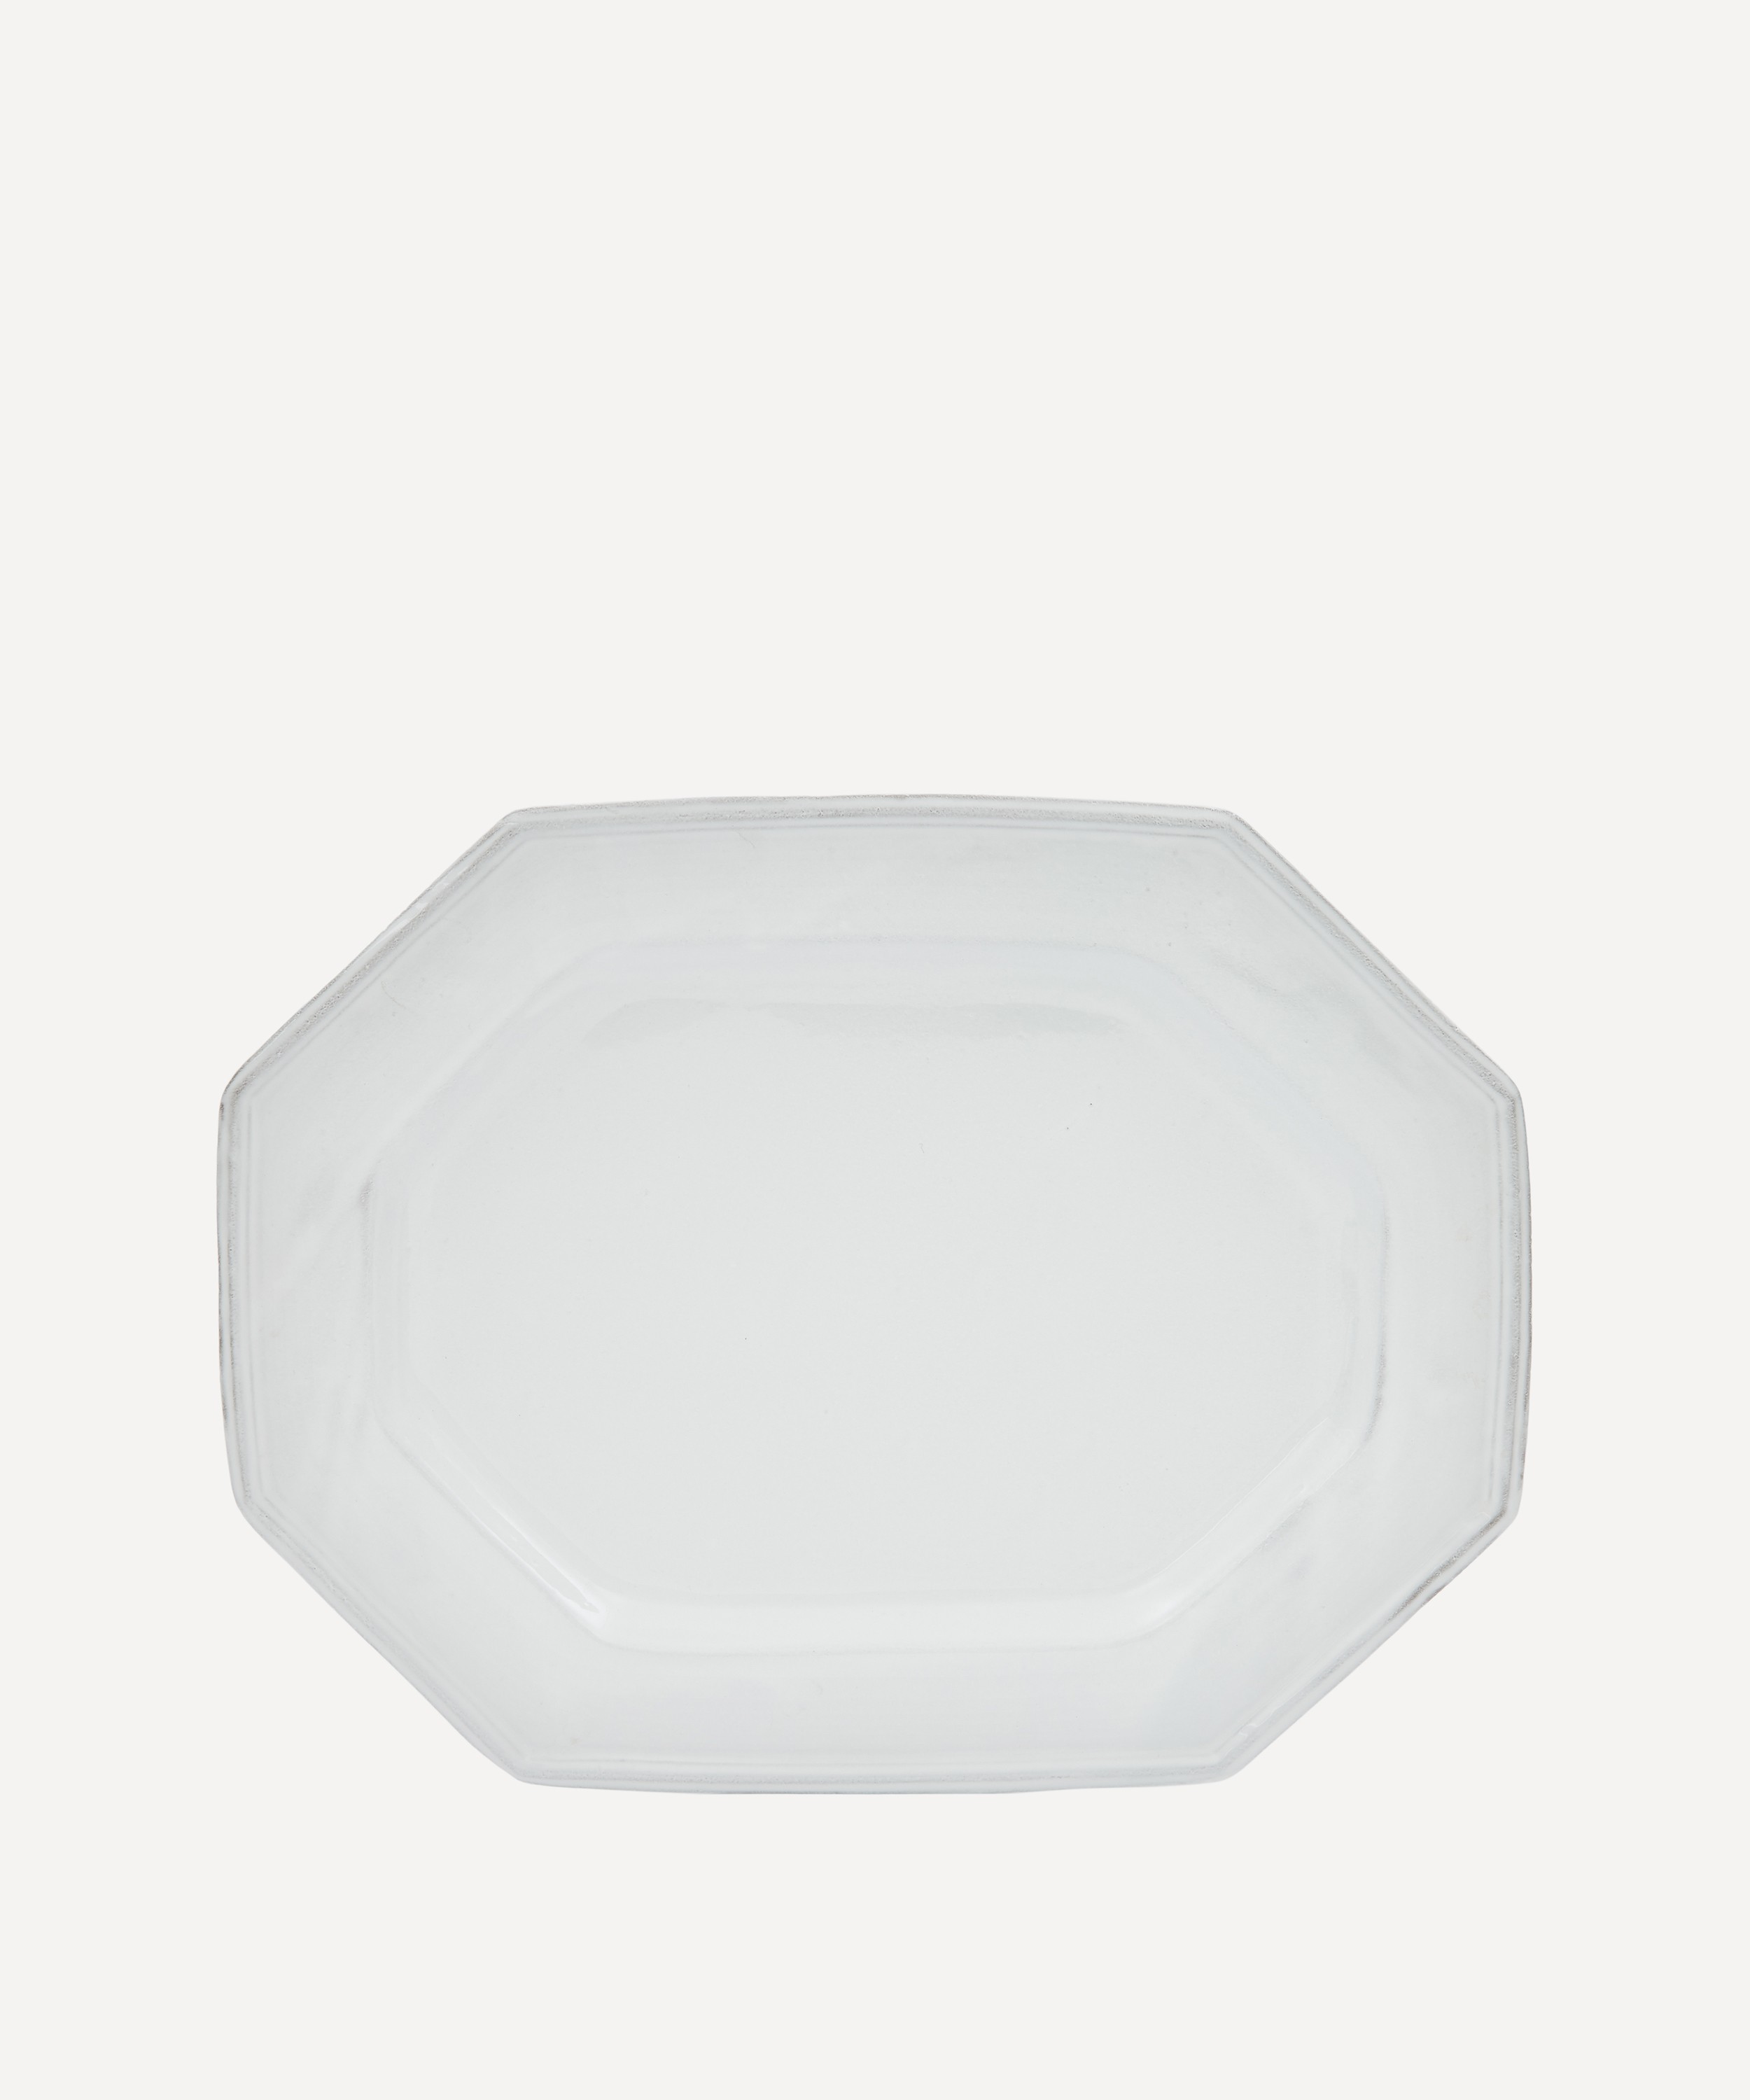 Astier de Villatte - White Octagonal Platter